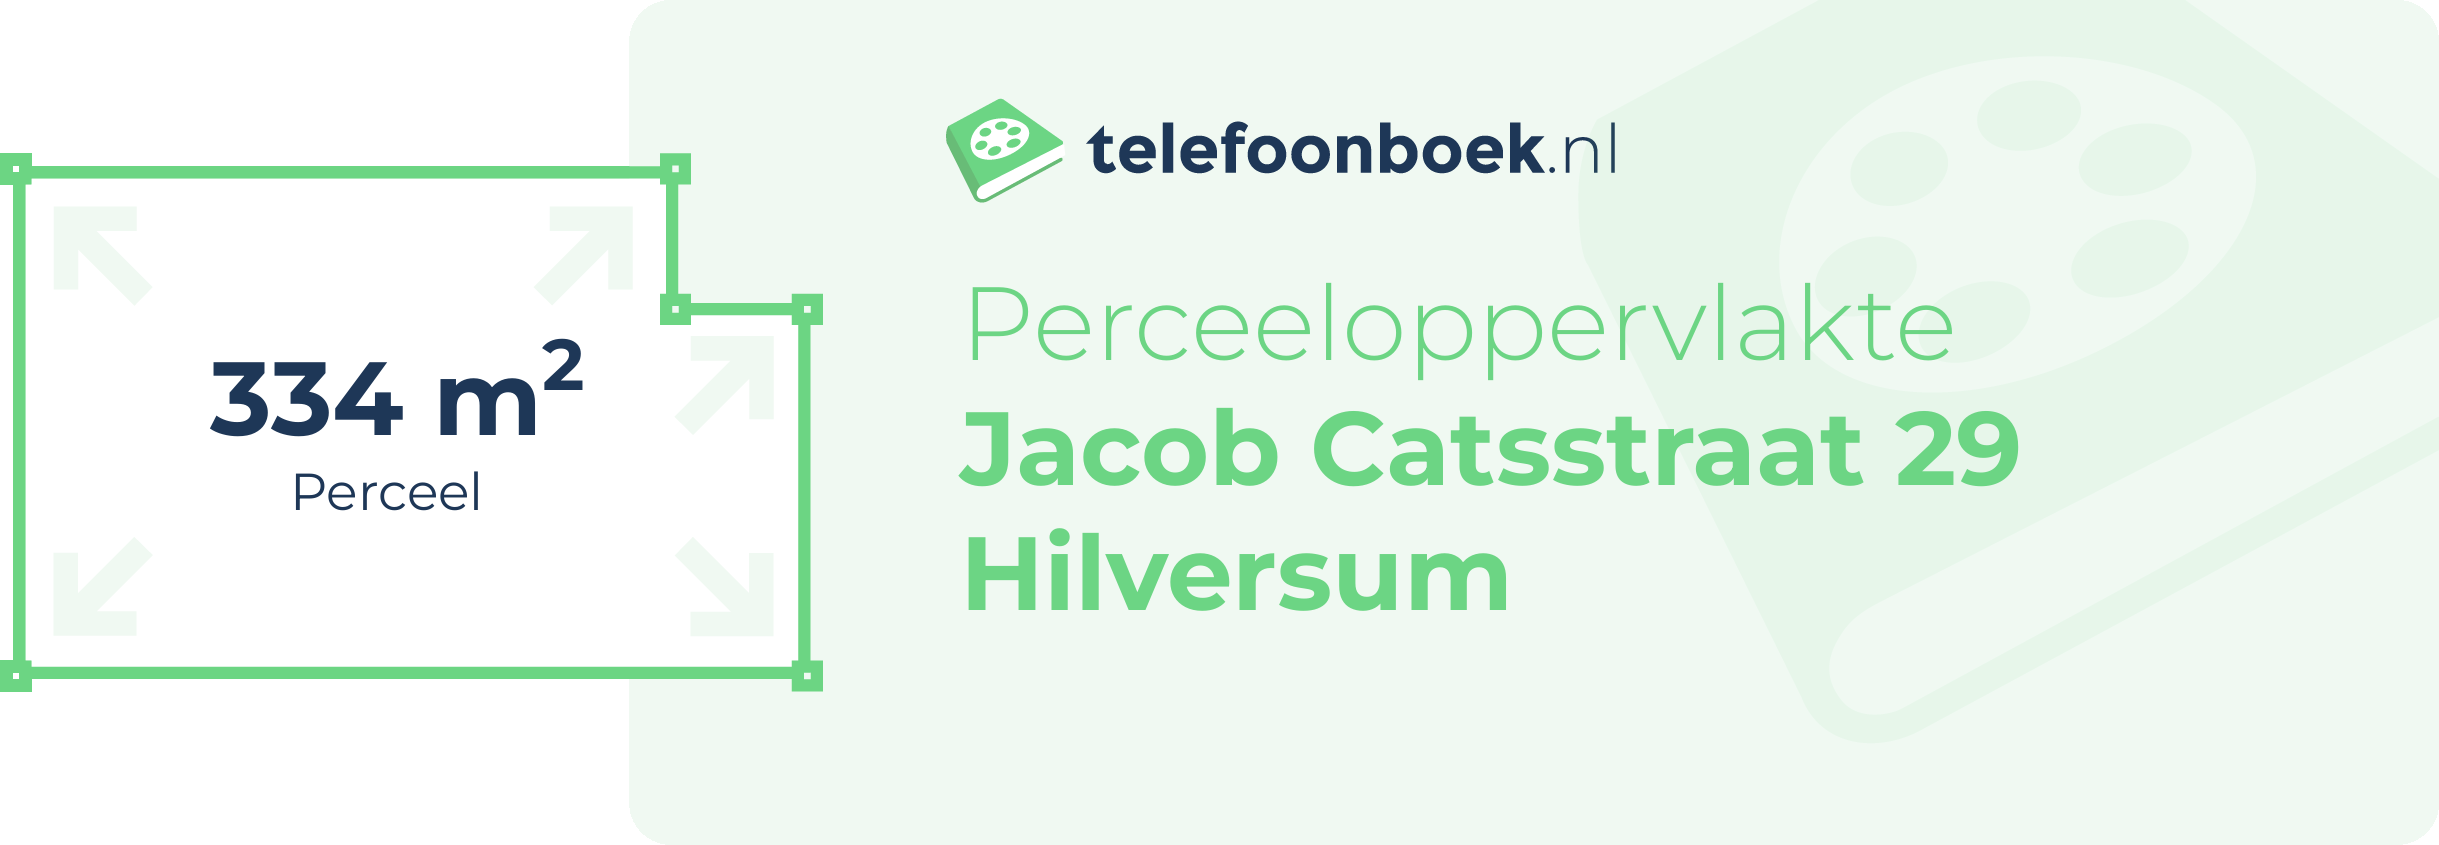 Perceeloppervlakte Jacob Catsstraat 29 Hilversum